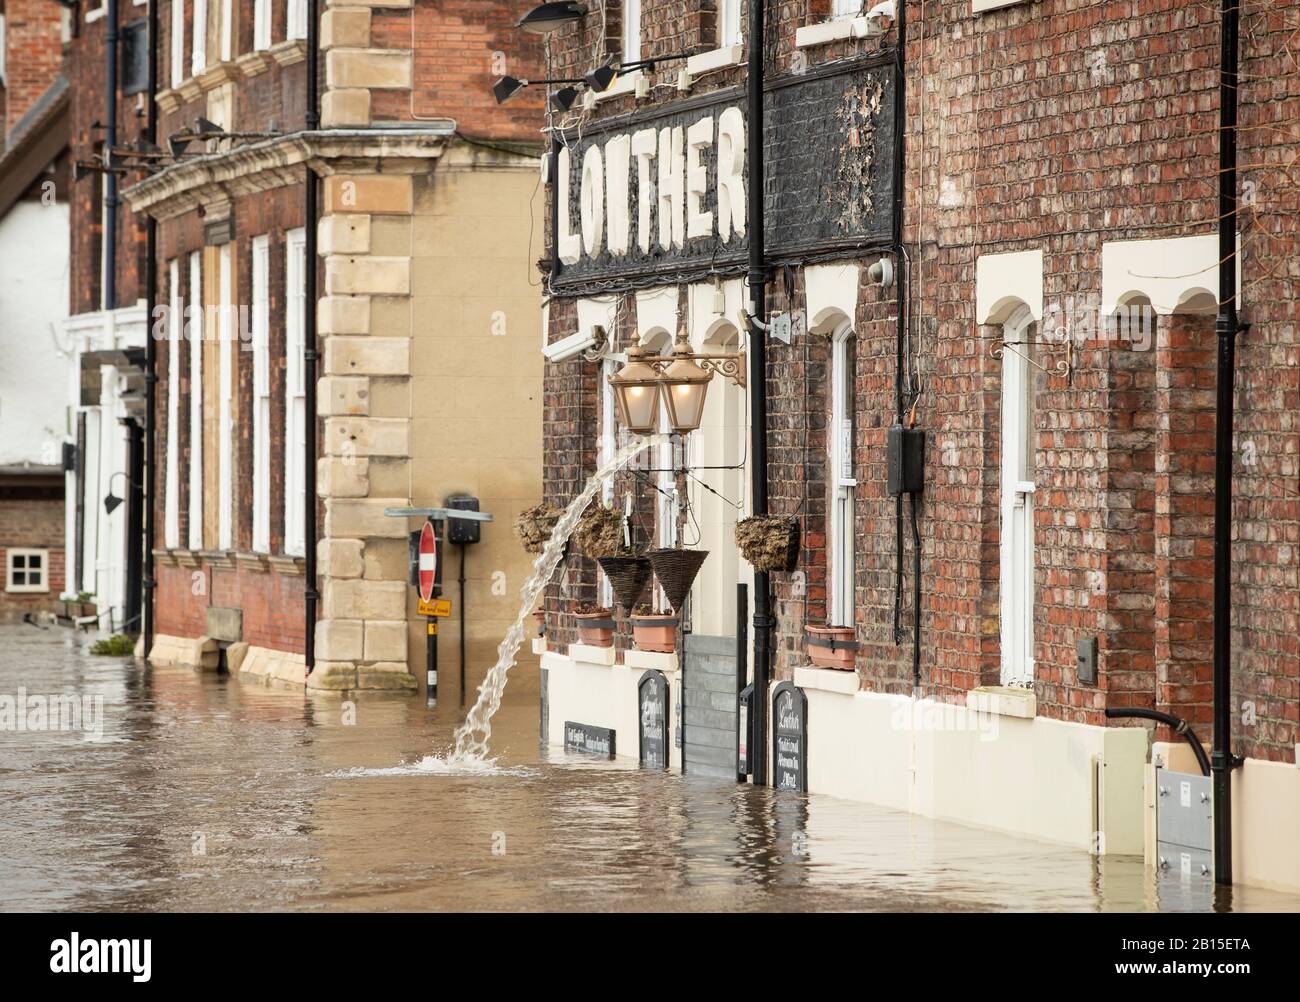 L'acqua delle inondazioni viene pompata dal pub Lowther di York dopo che il fiume Ouse ha fatto scoppiare le sue banche, poiché un terzo fine settimana consecutivo di maltempo tempestoso sta portando ulteriore miseria delle inondazioni alle comunità già sode. Foto Stock